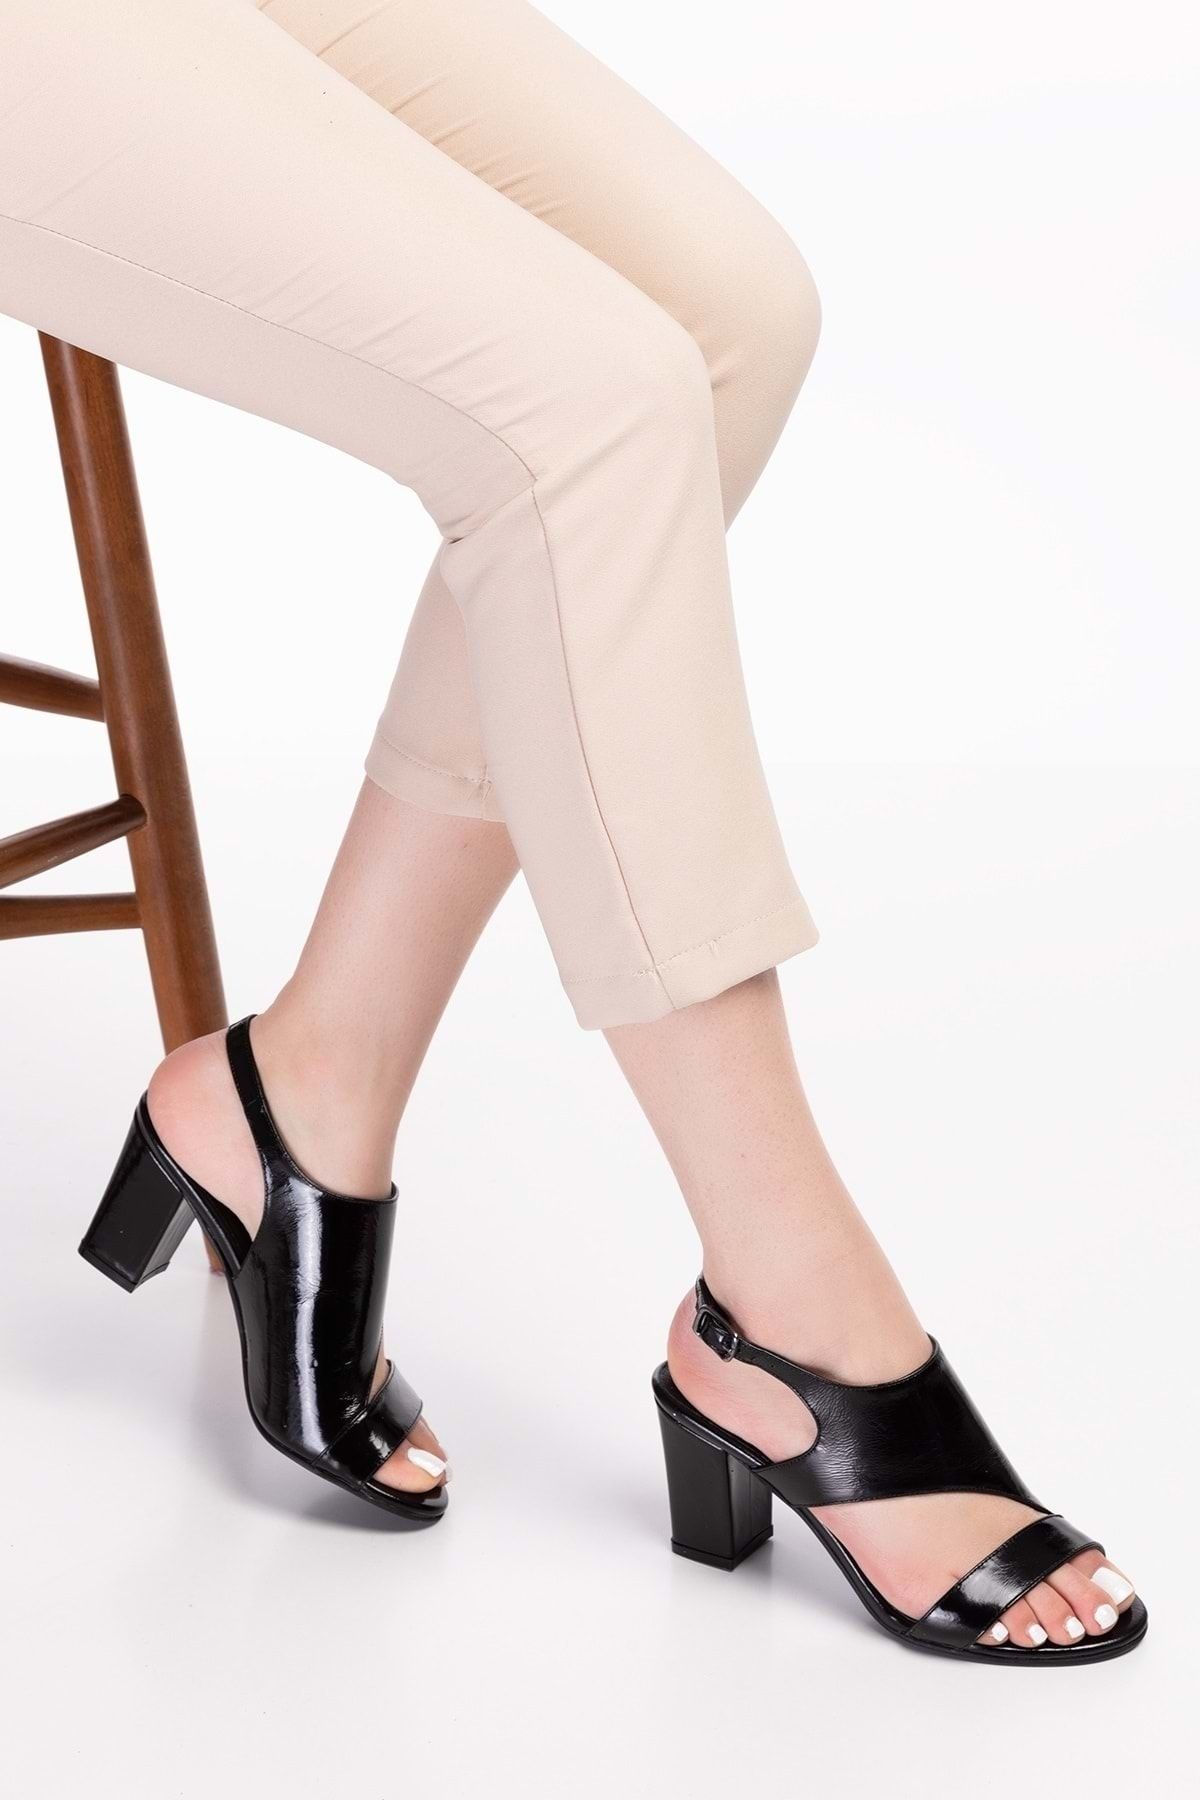 Gondol Kadın Hakiki Deri Klasik Topuklu Ayakkabı Şhn.0317 - Siyah Rugan - 35